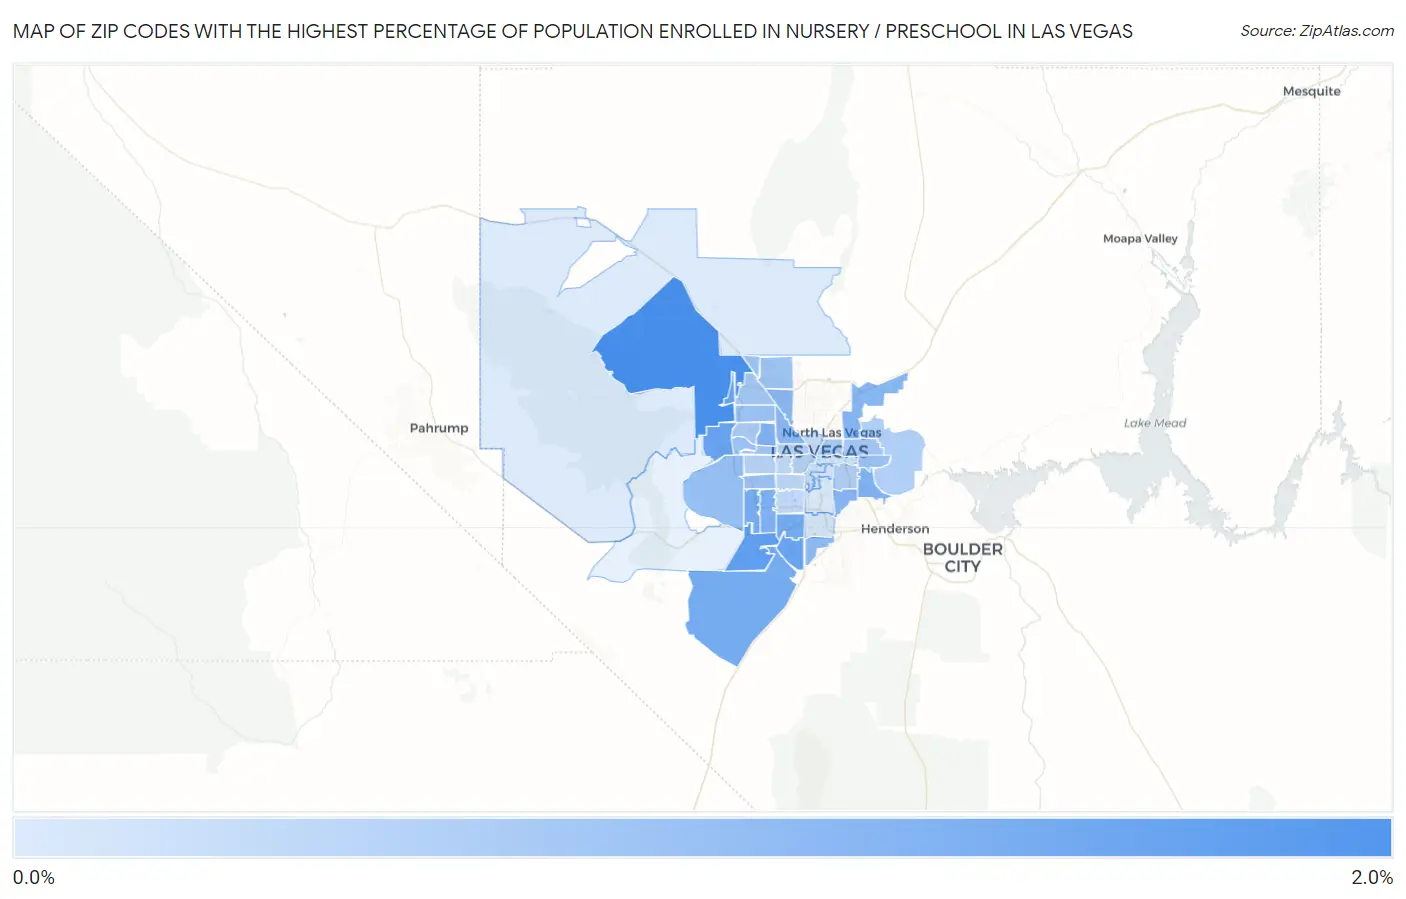 Zip Codes with the Highest Percentage of Population Enrolled in Nursery / Preschool in Las Vegas Map